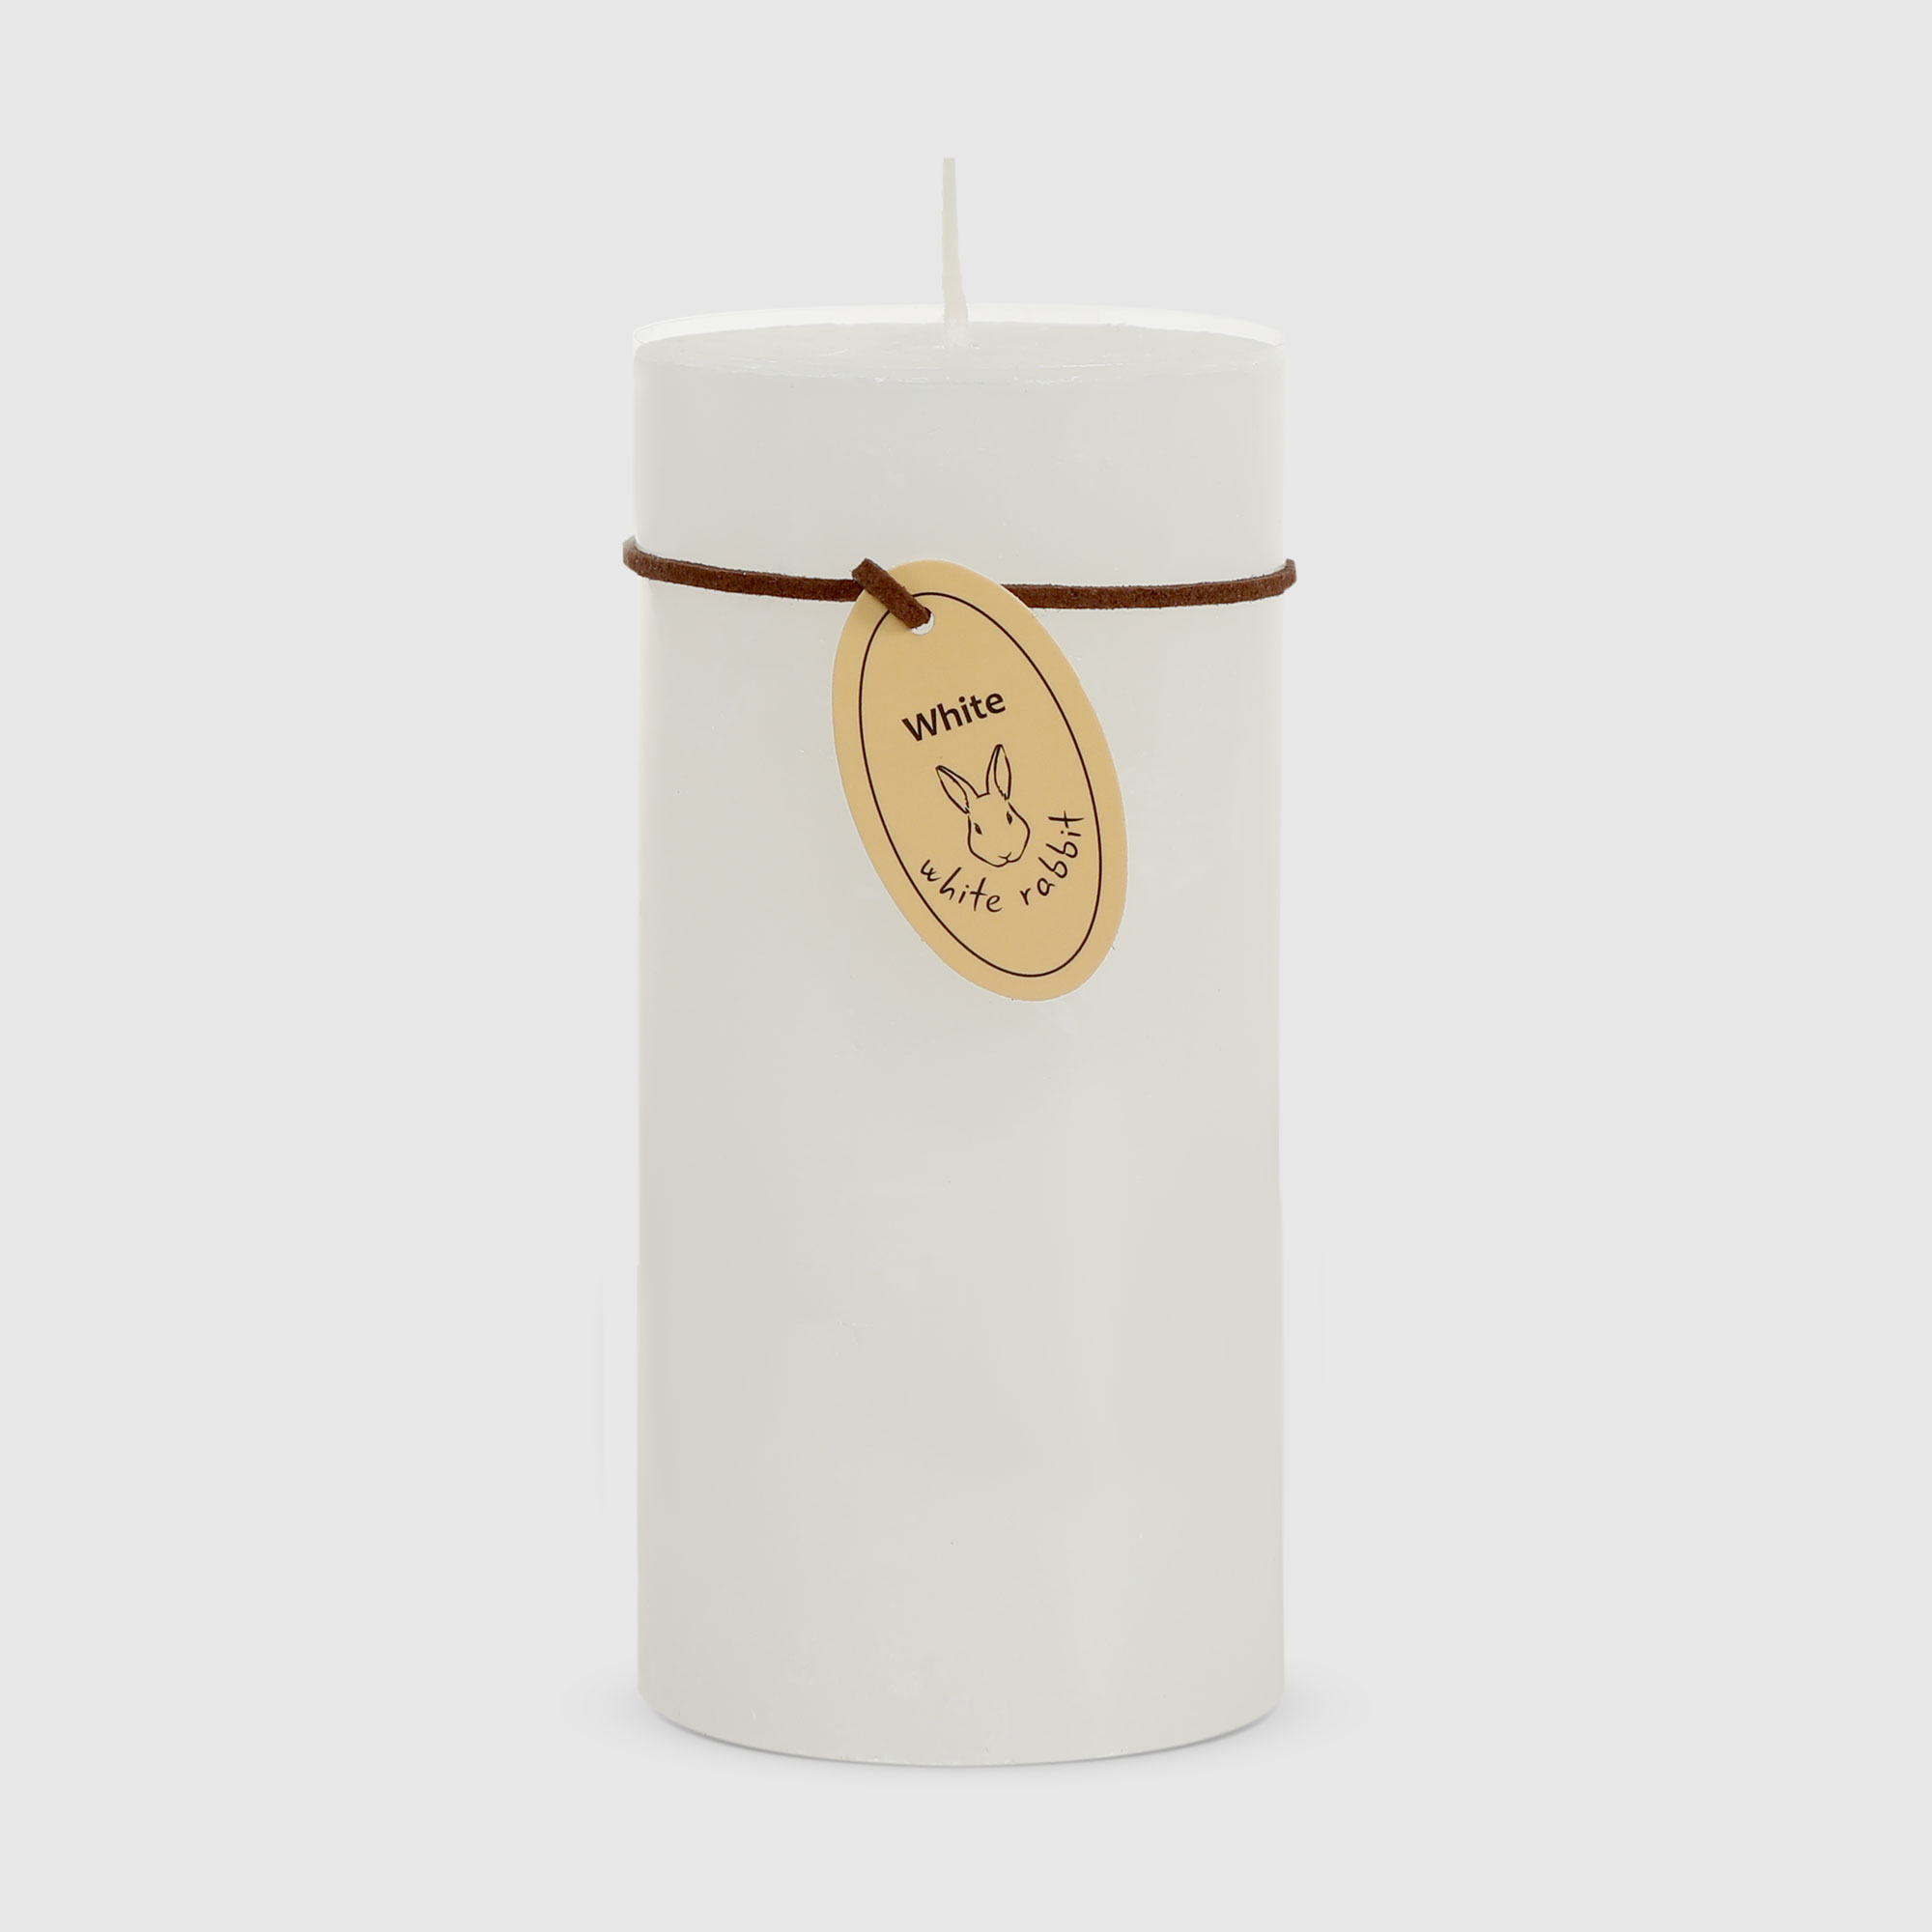 Свеча столбик White Rabbit рустик белый 7х15 см white coffee свеча